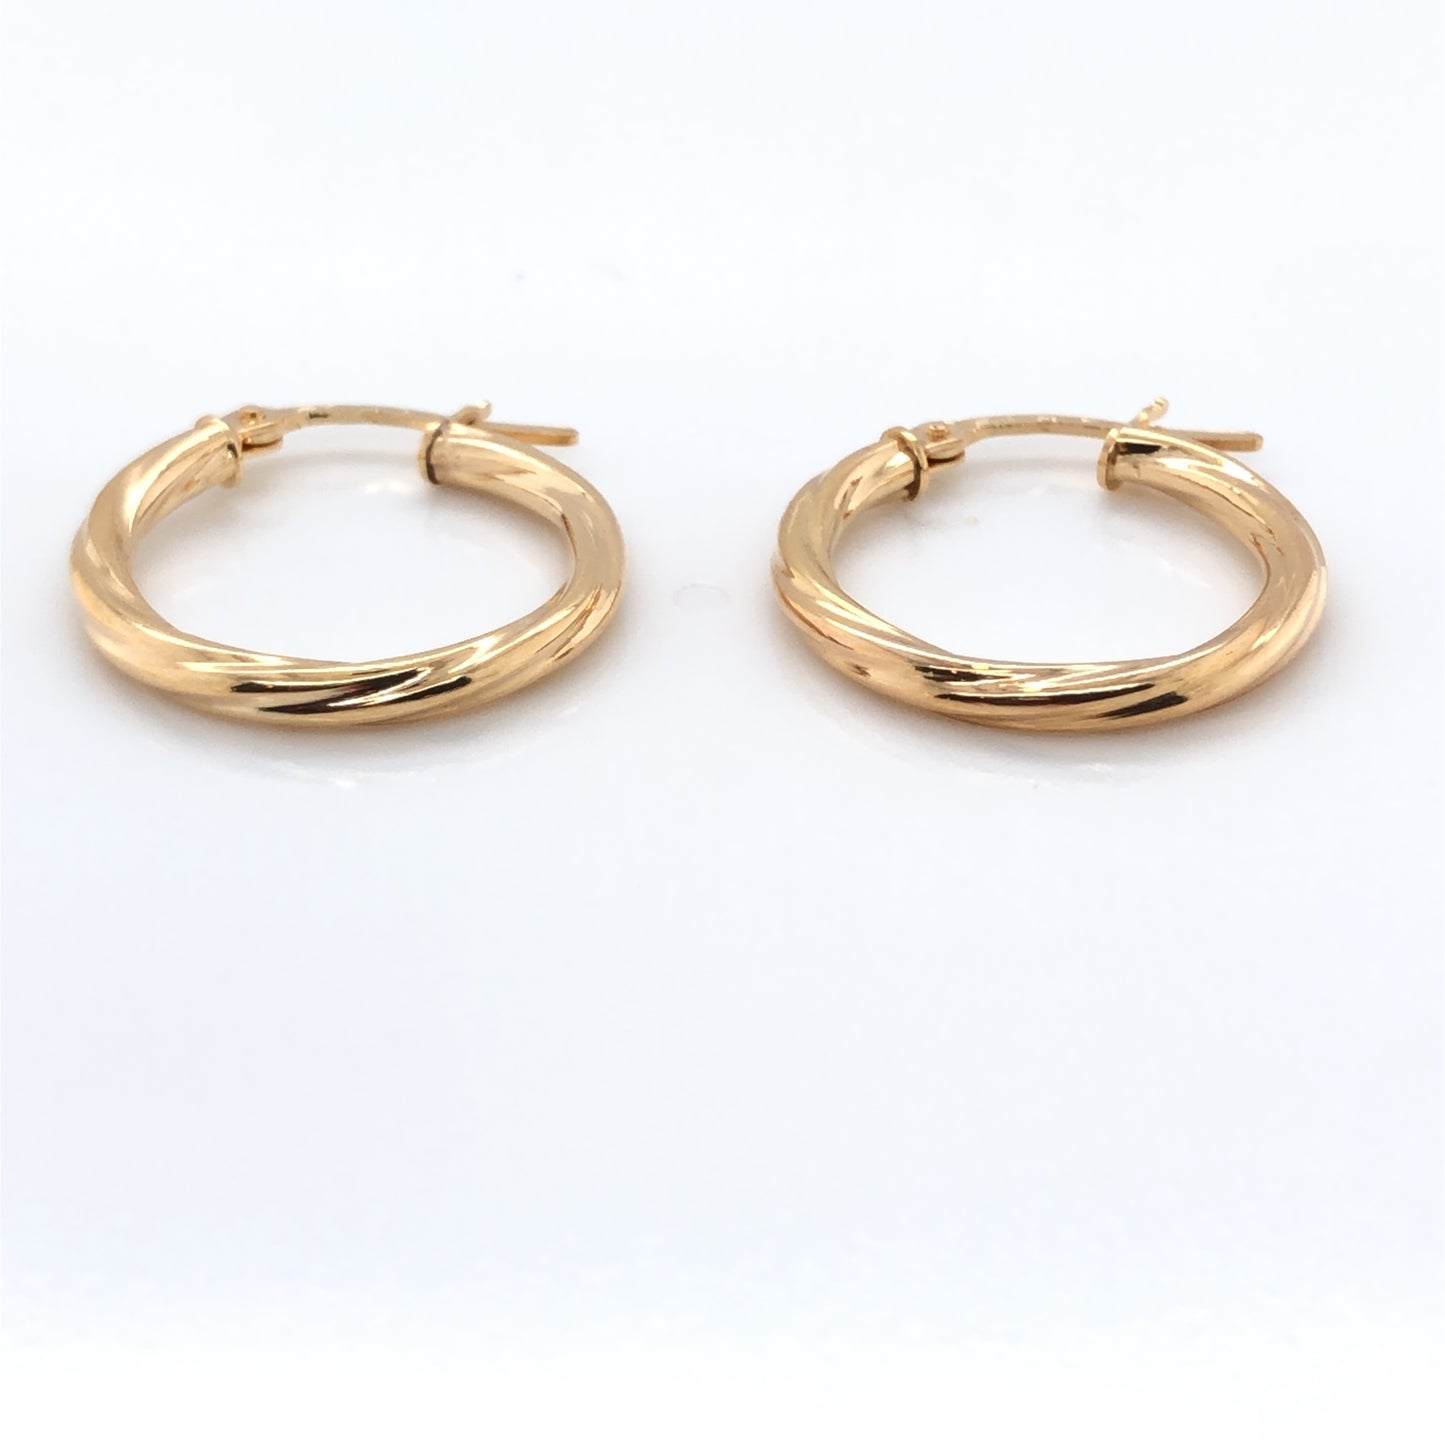 9ct Gold 15mm Twist Hoop Earrings GE2053/15